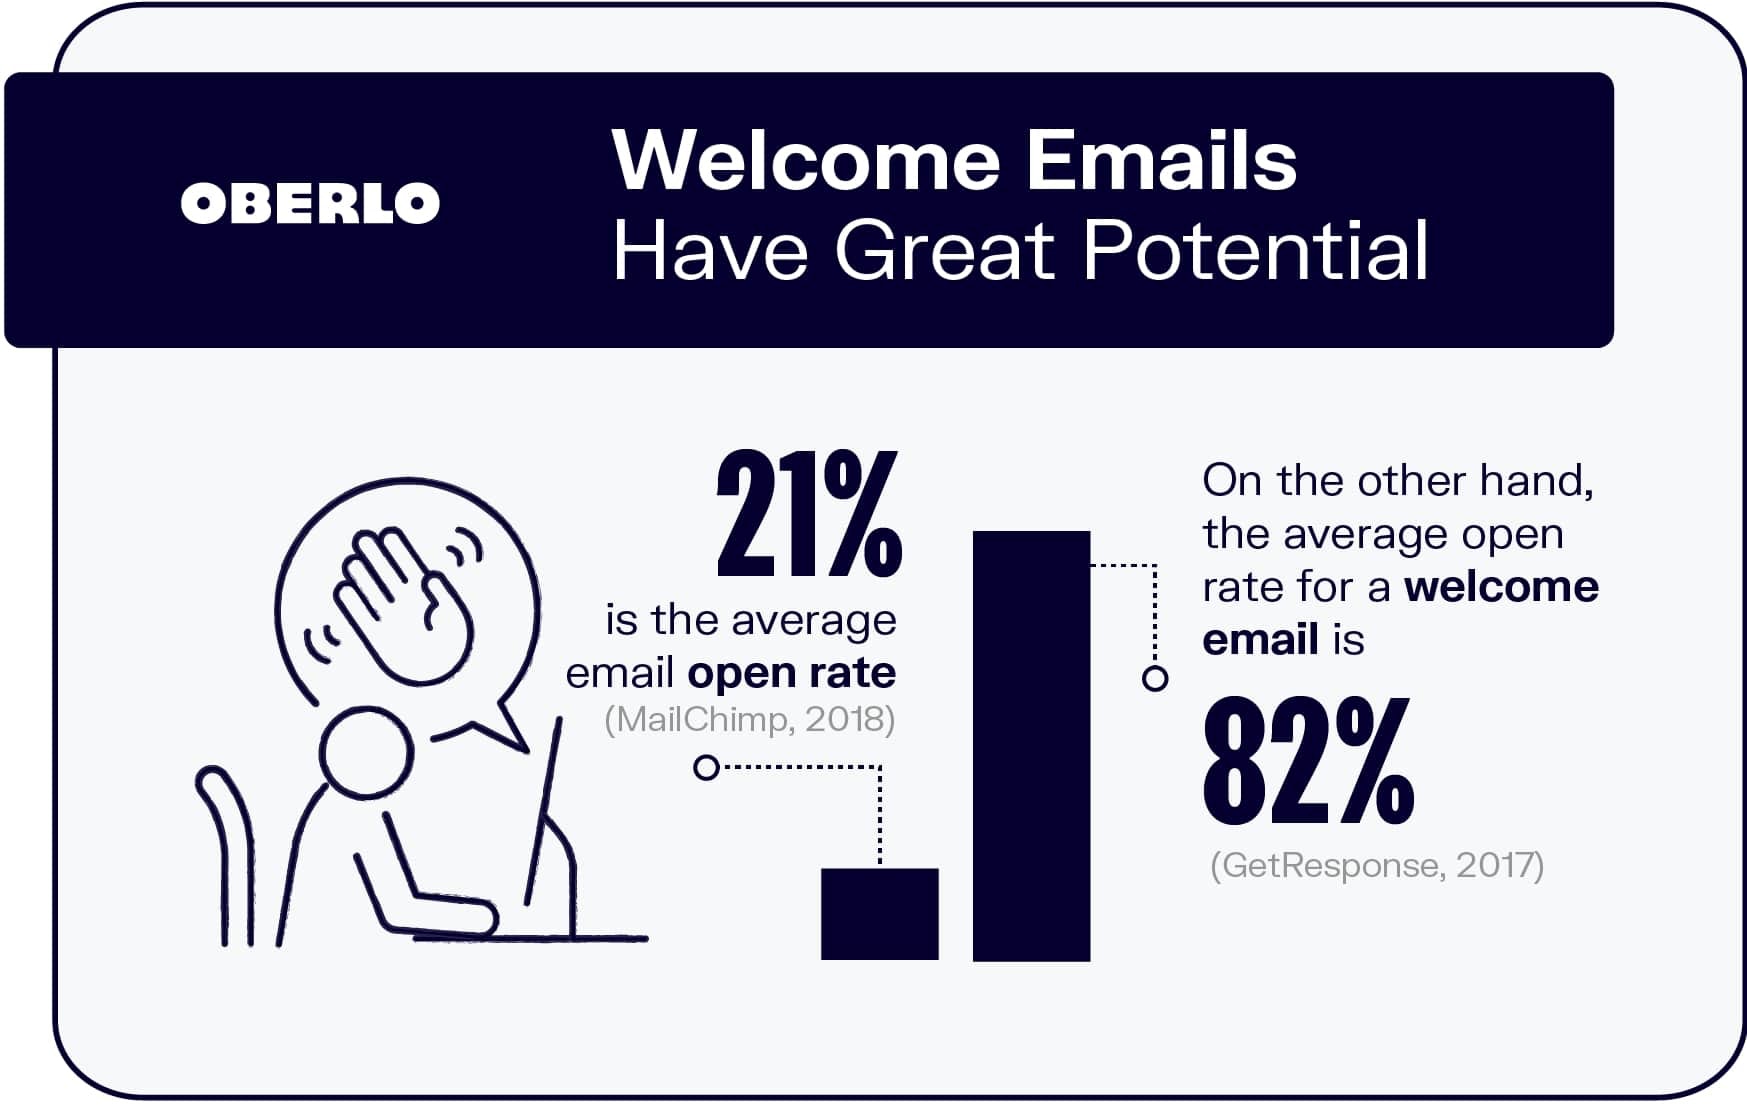 欢迎电子邮件有一个高打开率